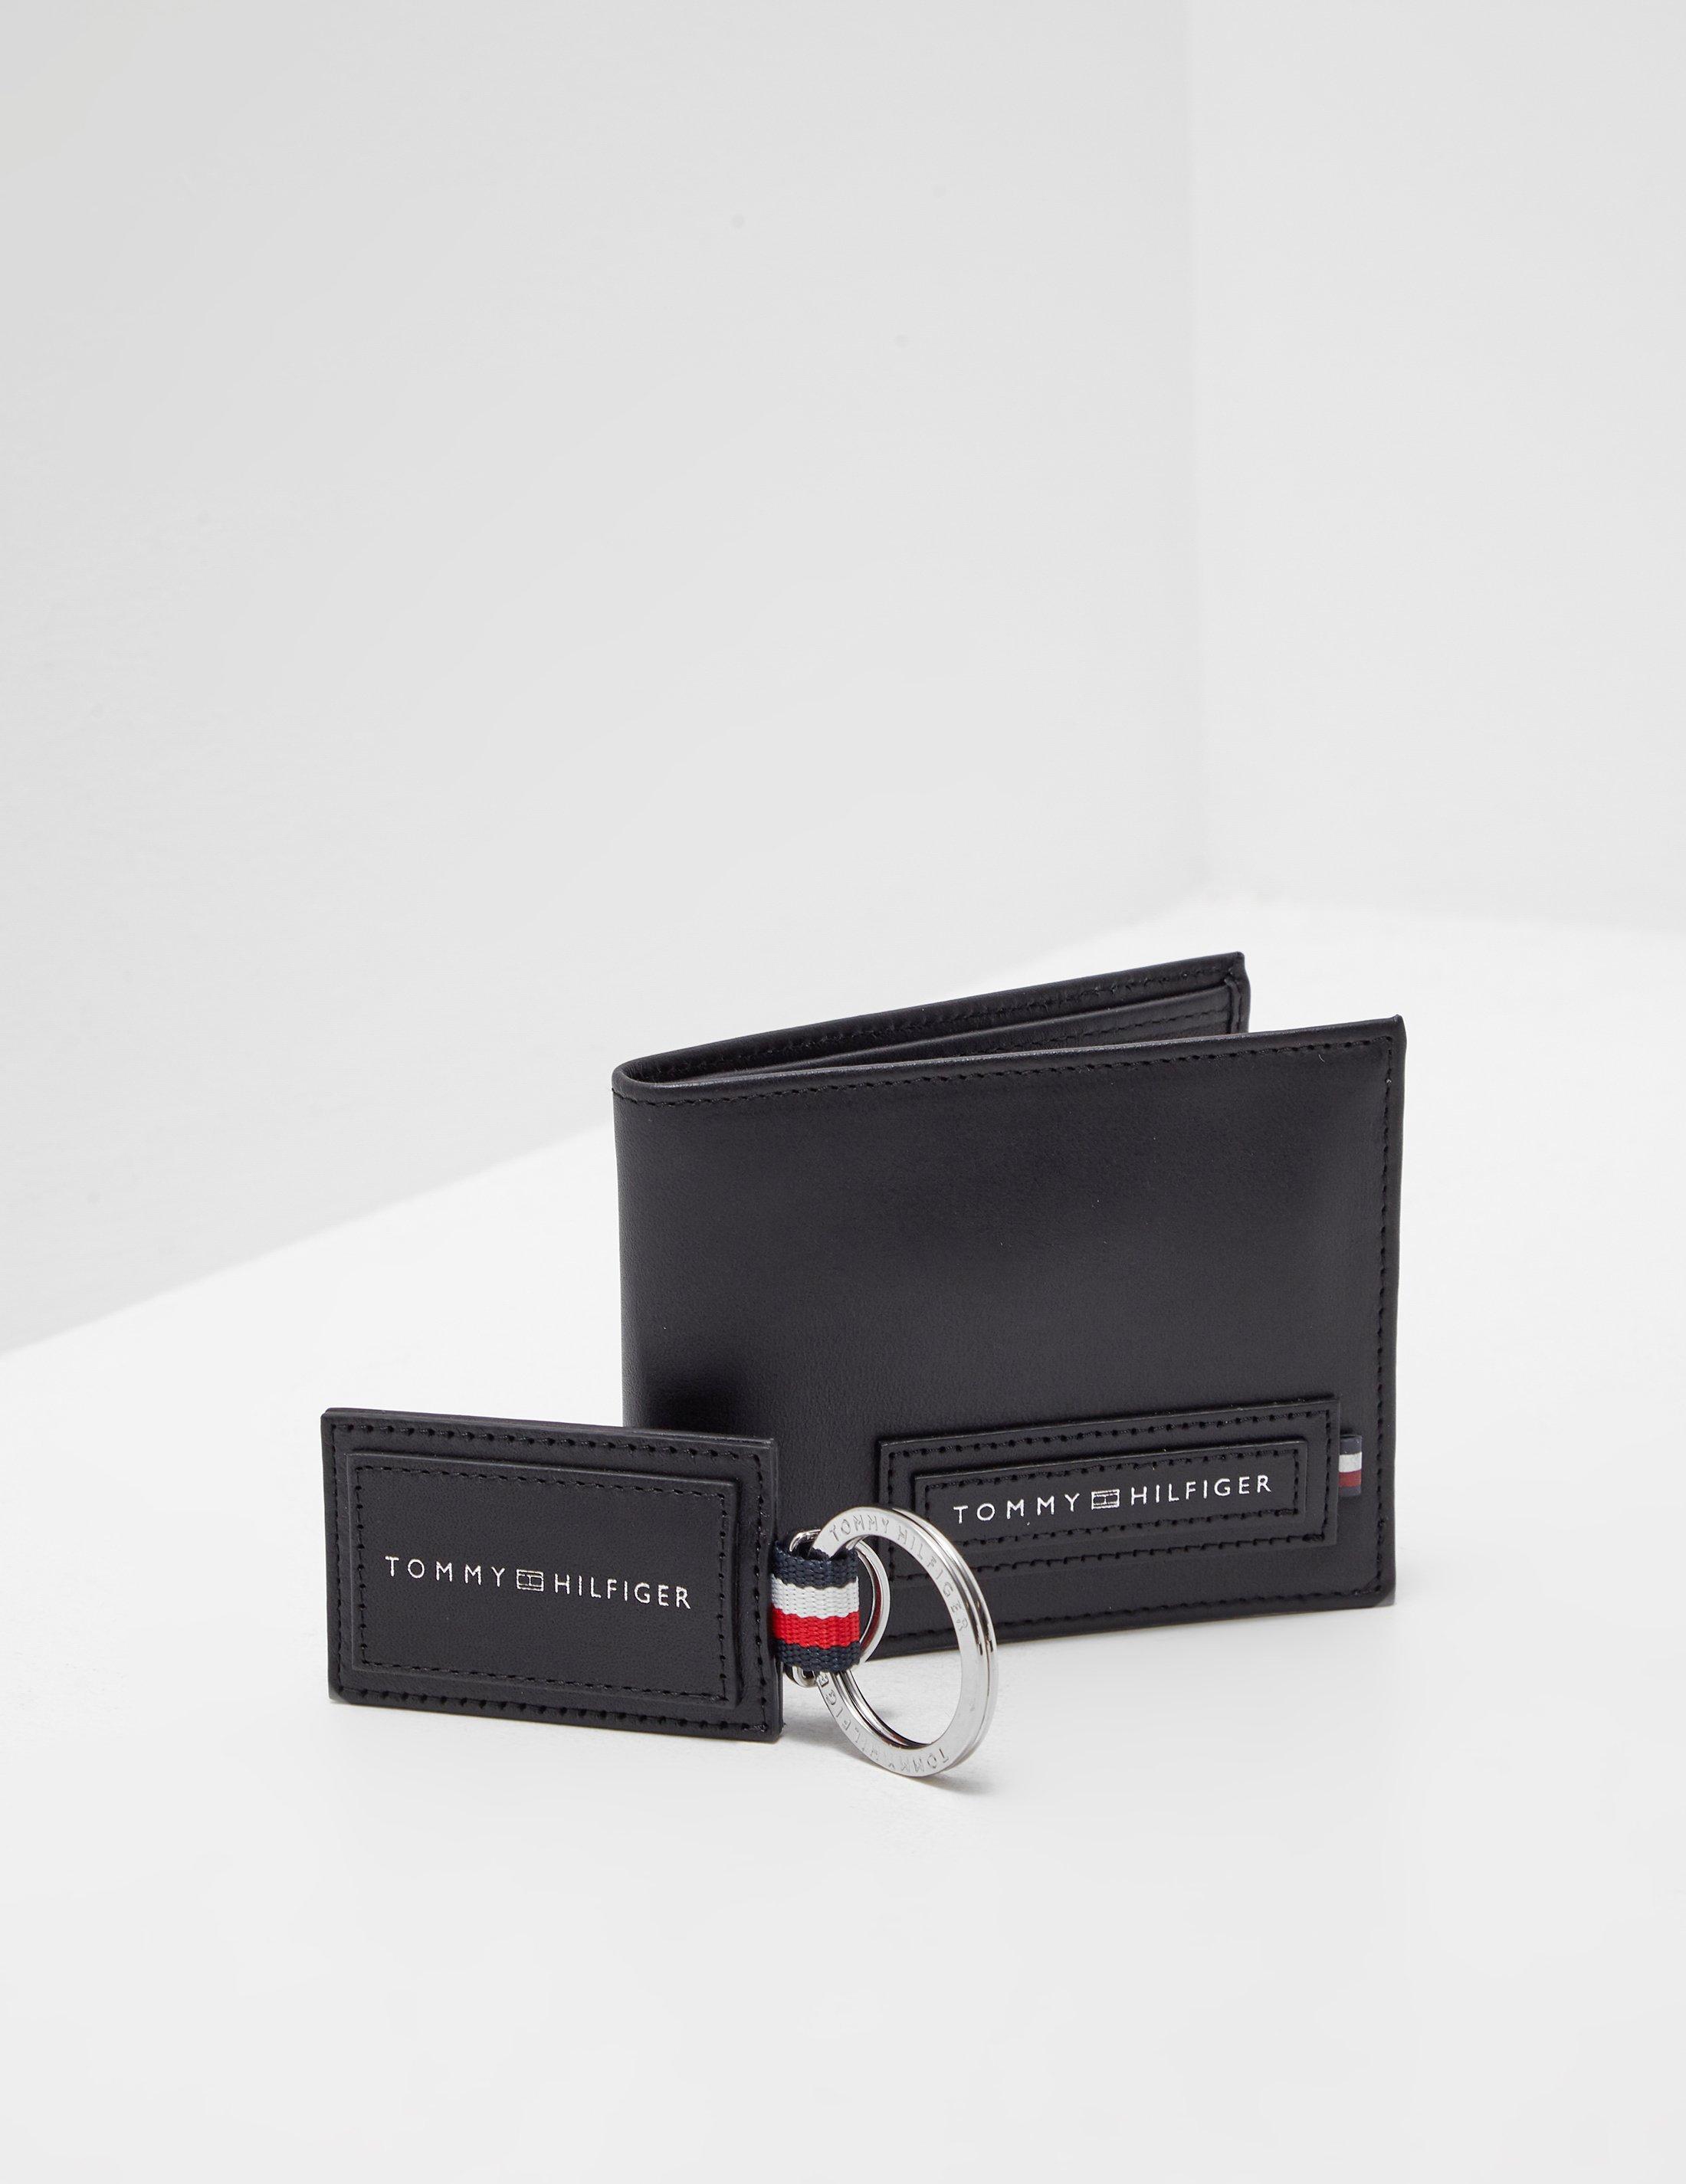 Tommy Hilfiger Denim Wallet And Keyring Gift Set Black for Men - Lyst